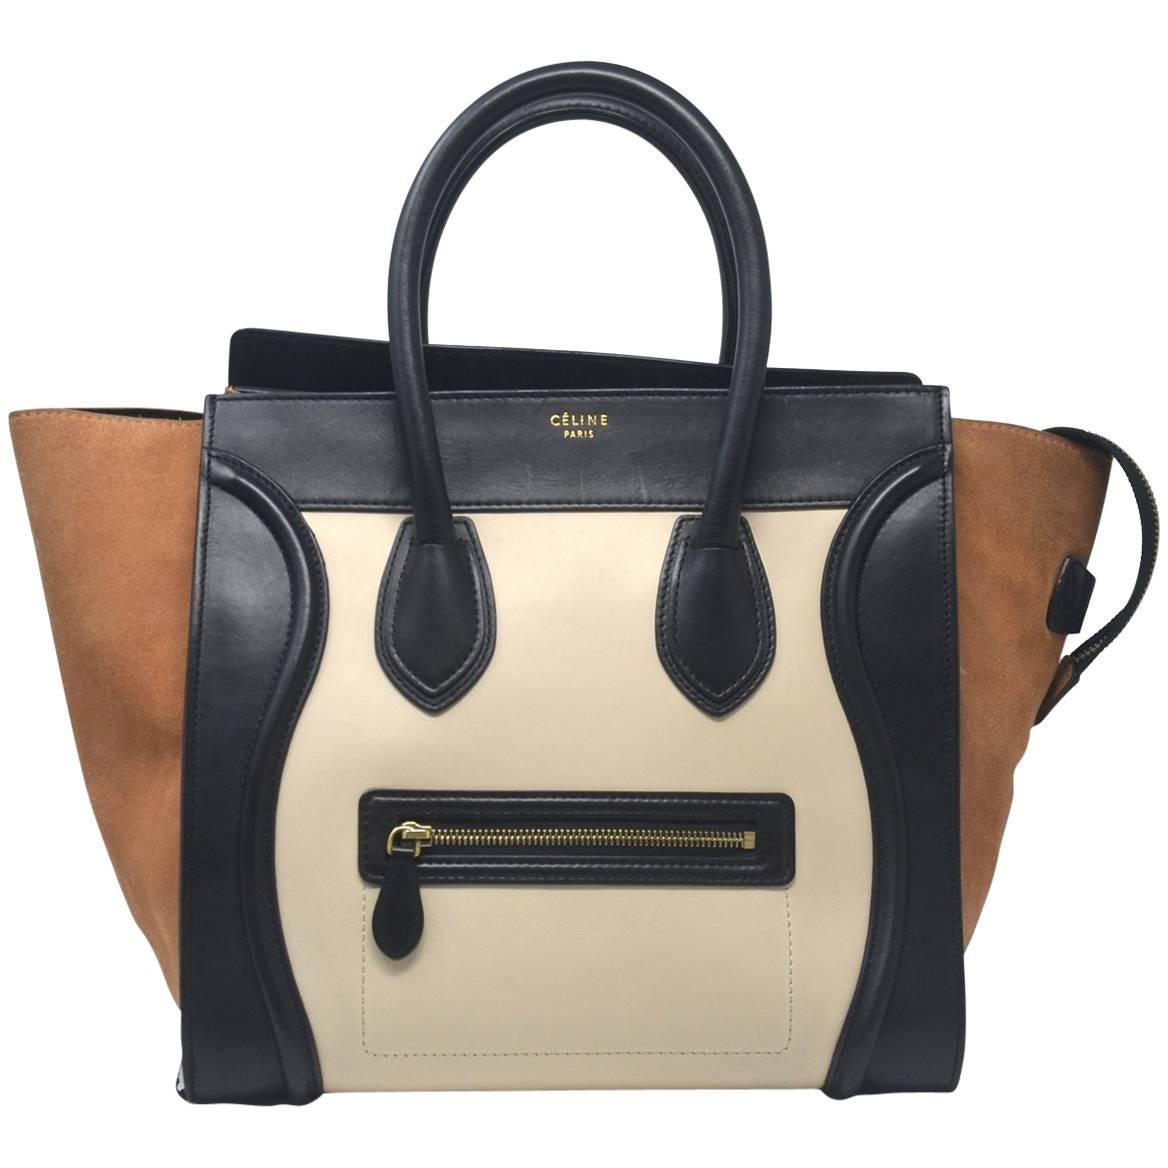 Celine Mini Luggage Leather & Suede Tote Handbag